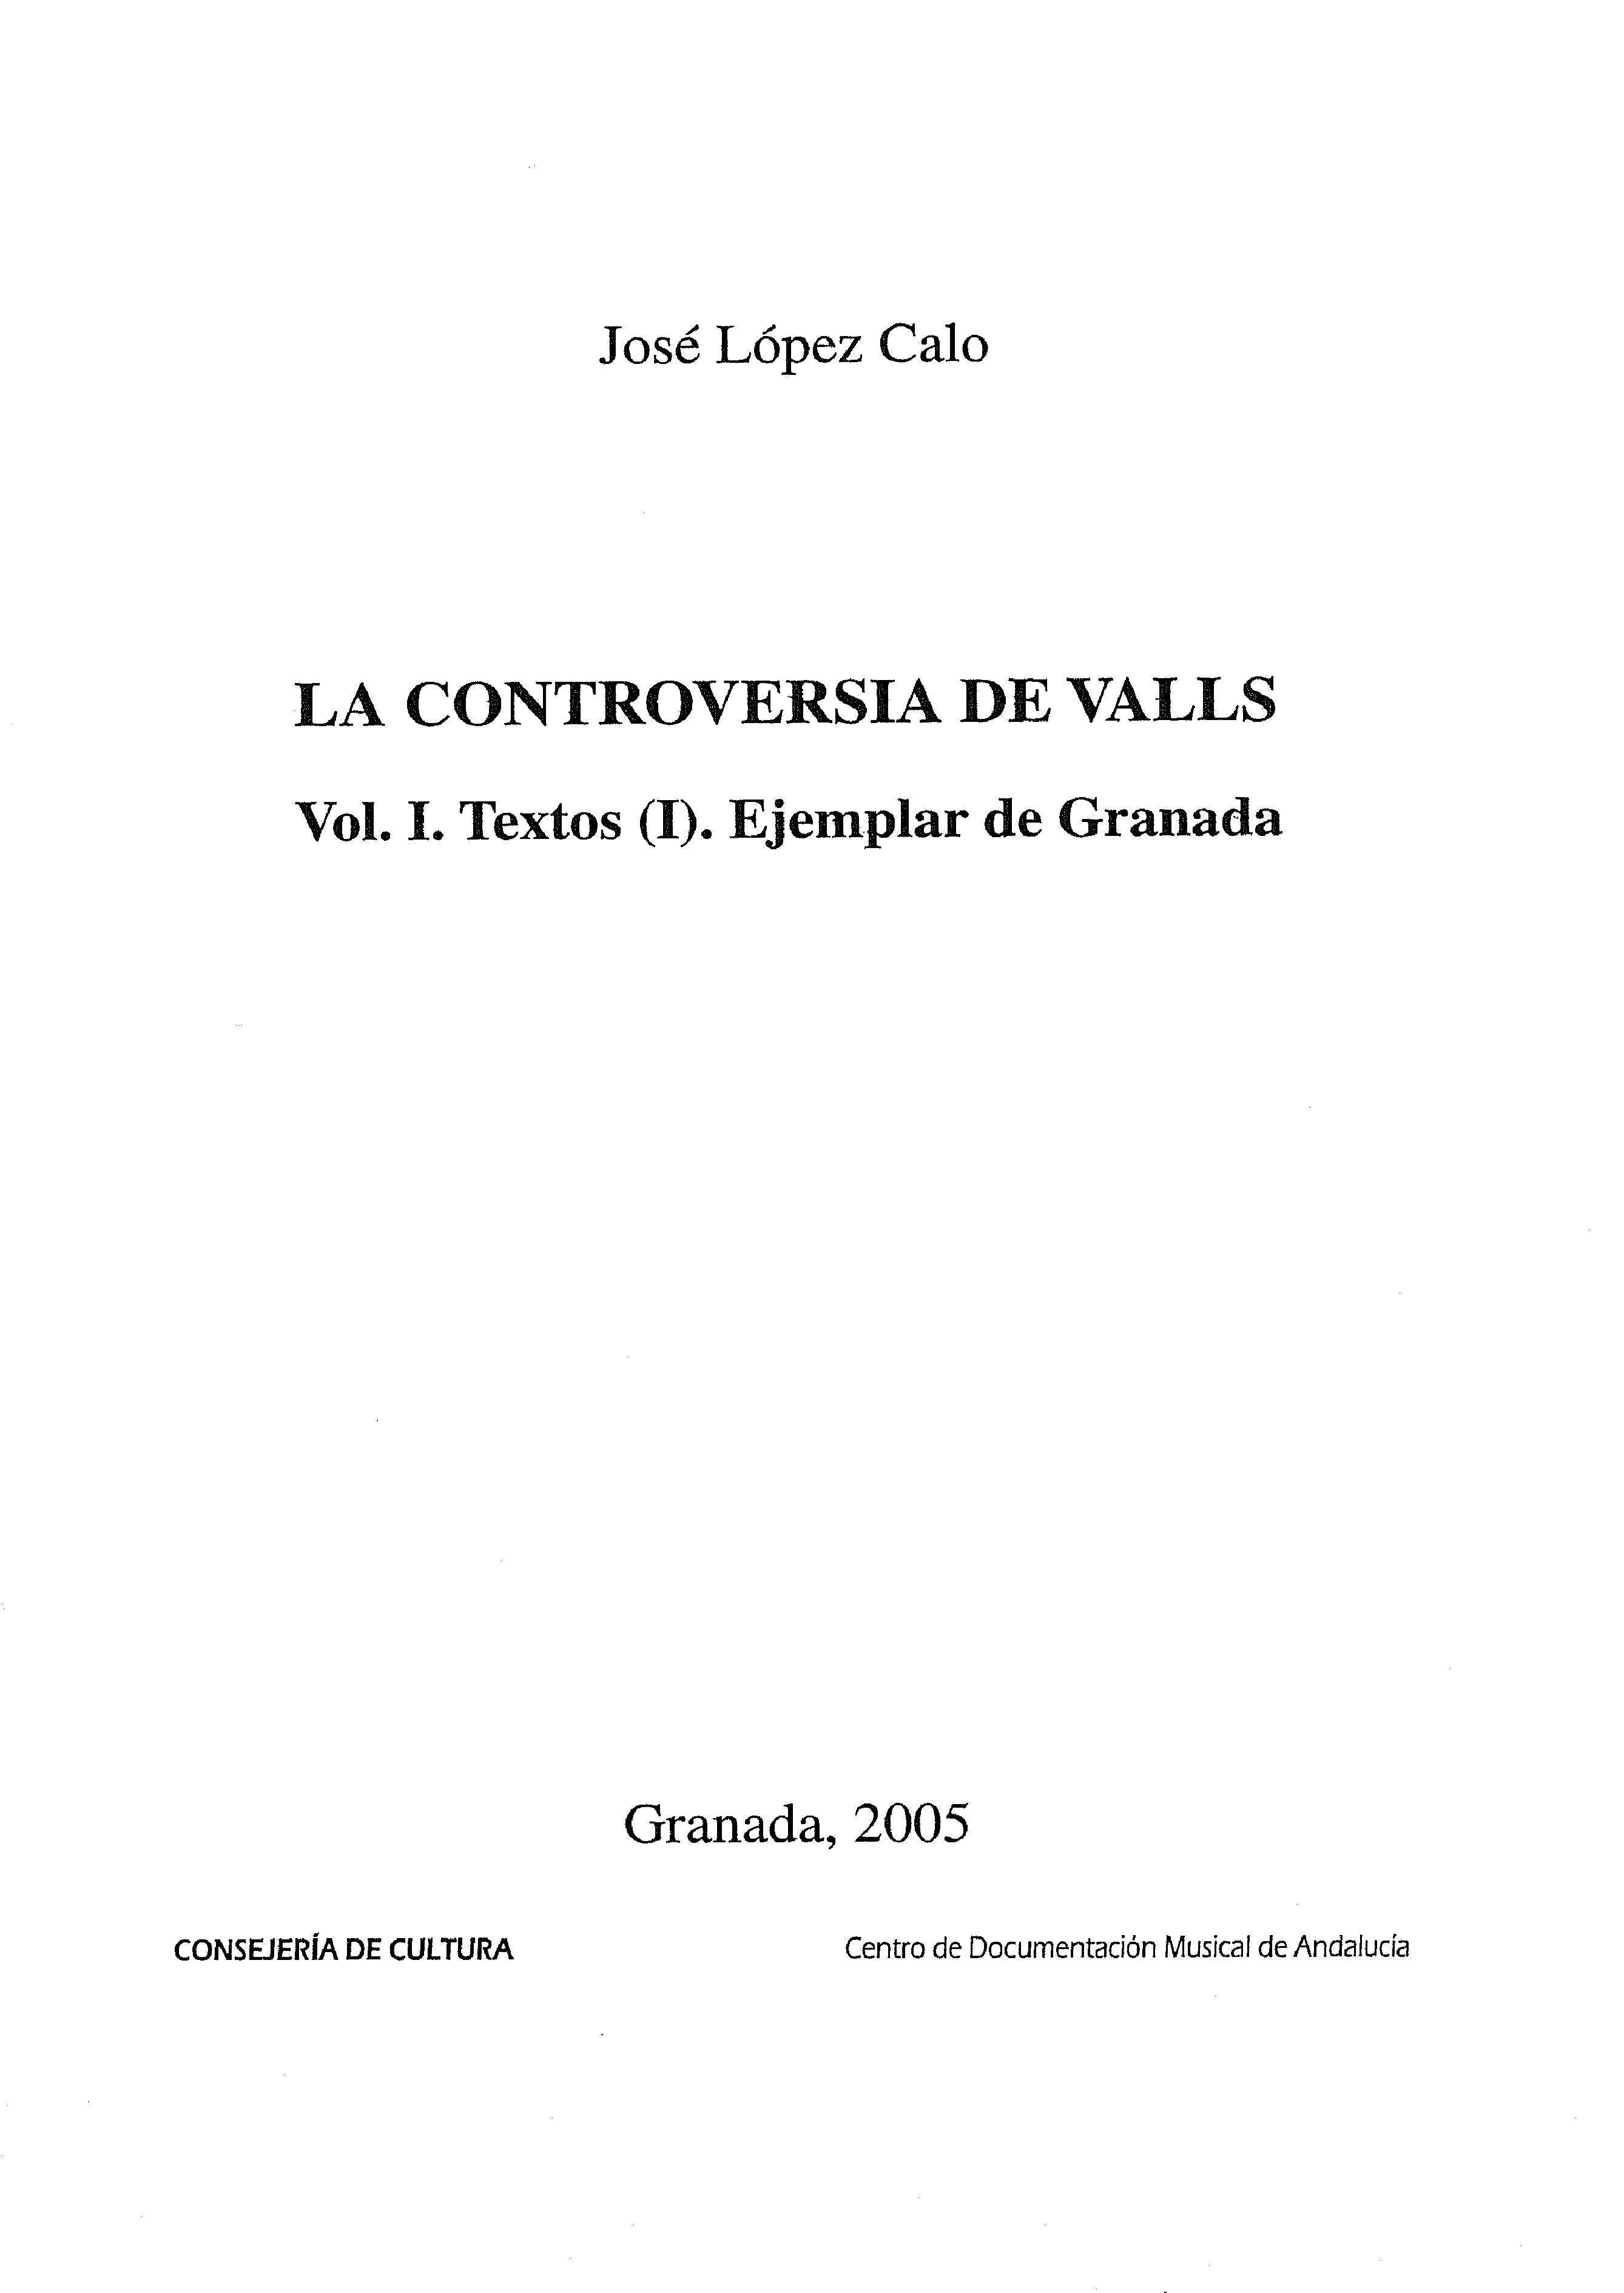 La controversia de Valls. Vol. I. Textos (I). Ejemplar de Granada